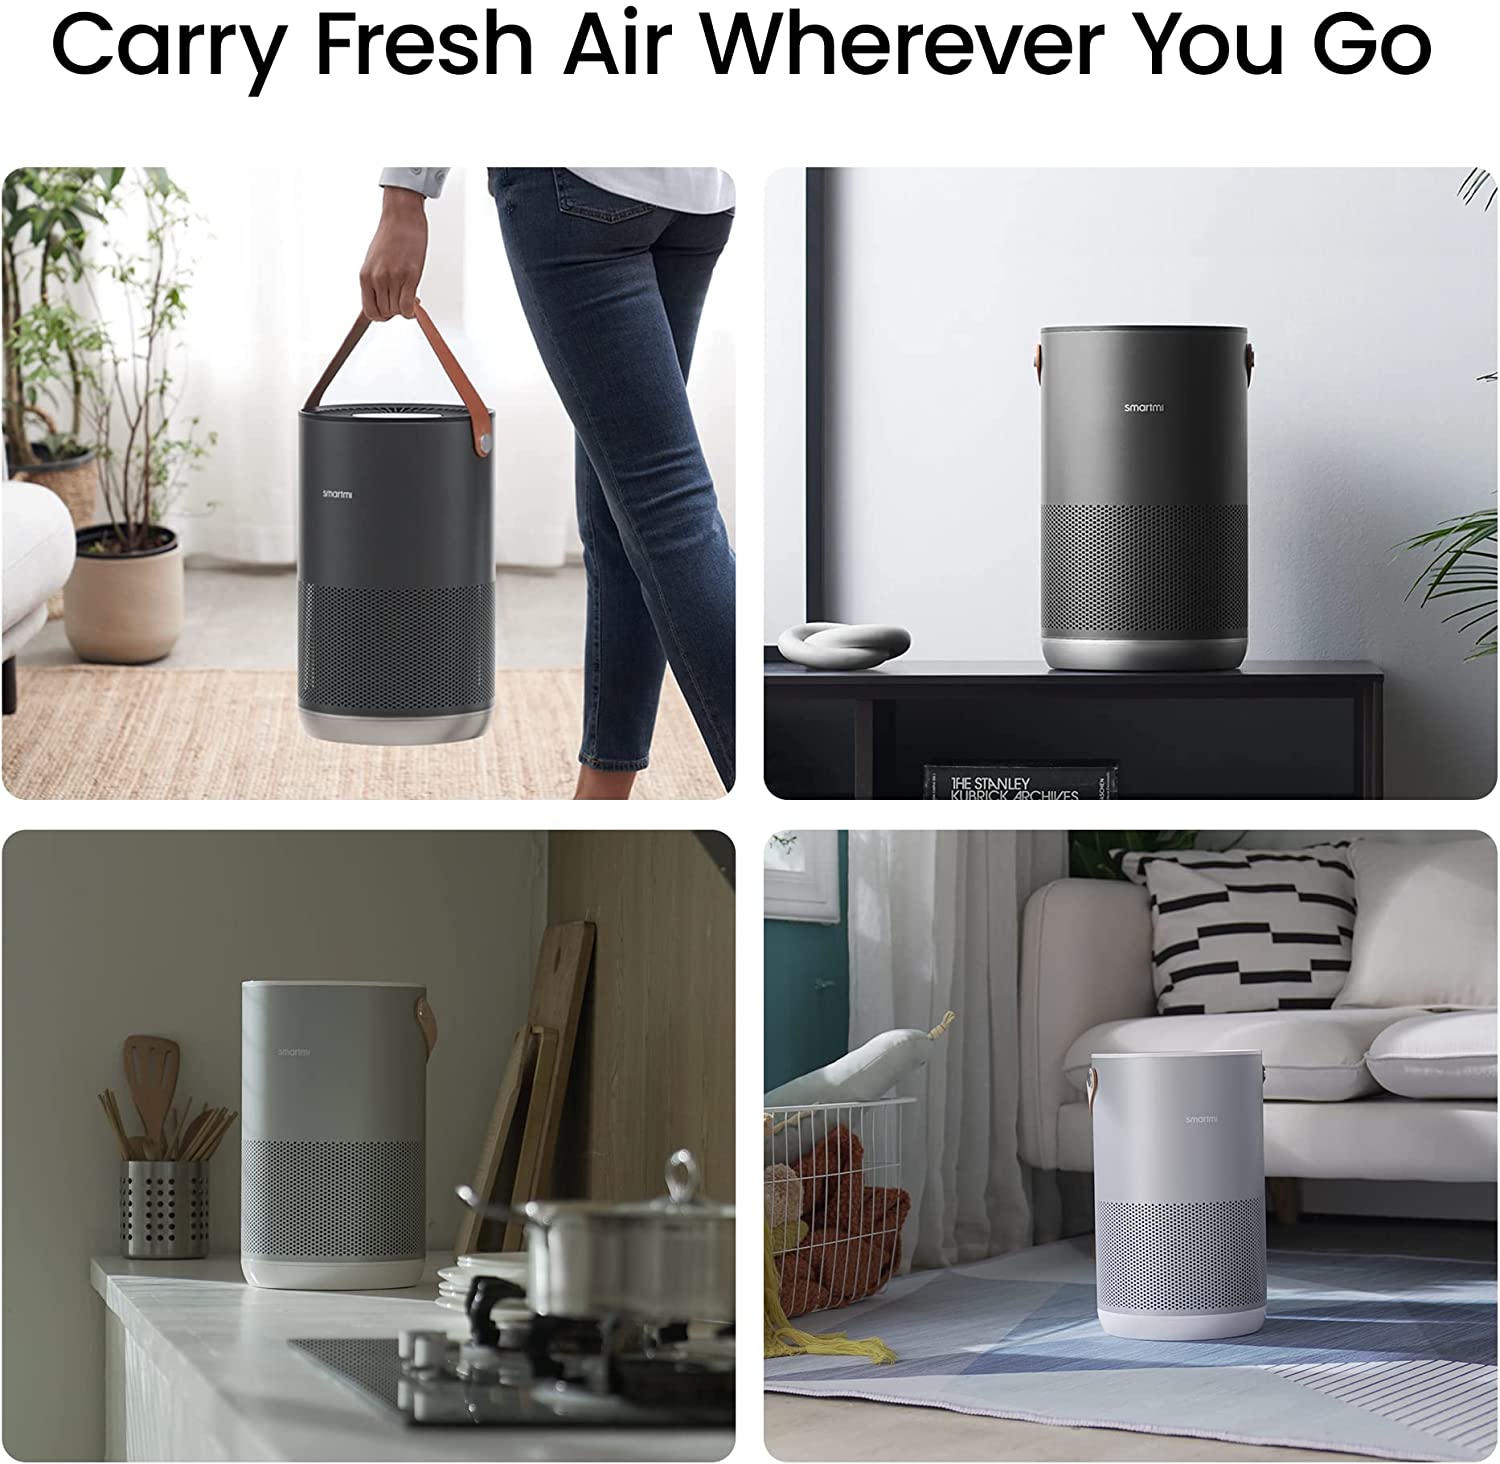 Smartmi Air Purifier P1 - Carry Fresh Air Wherever You Go